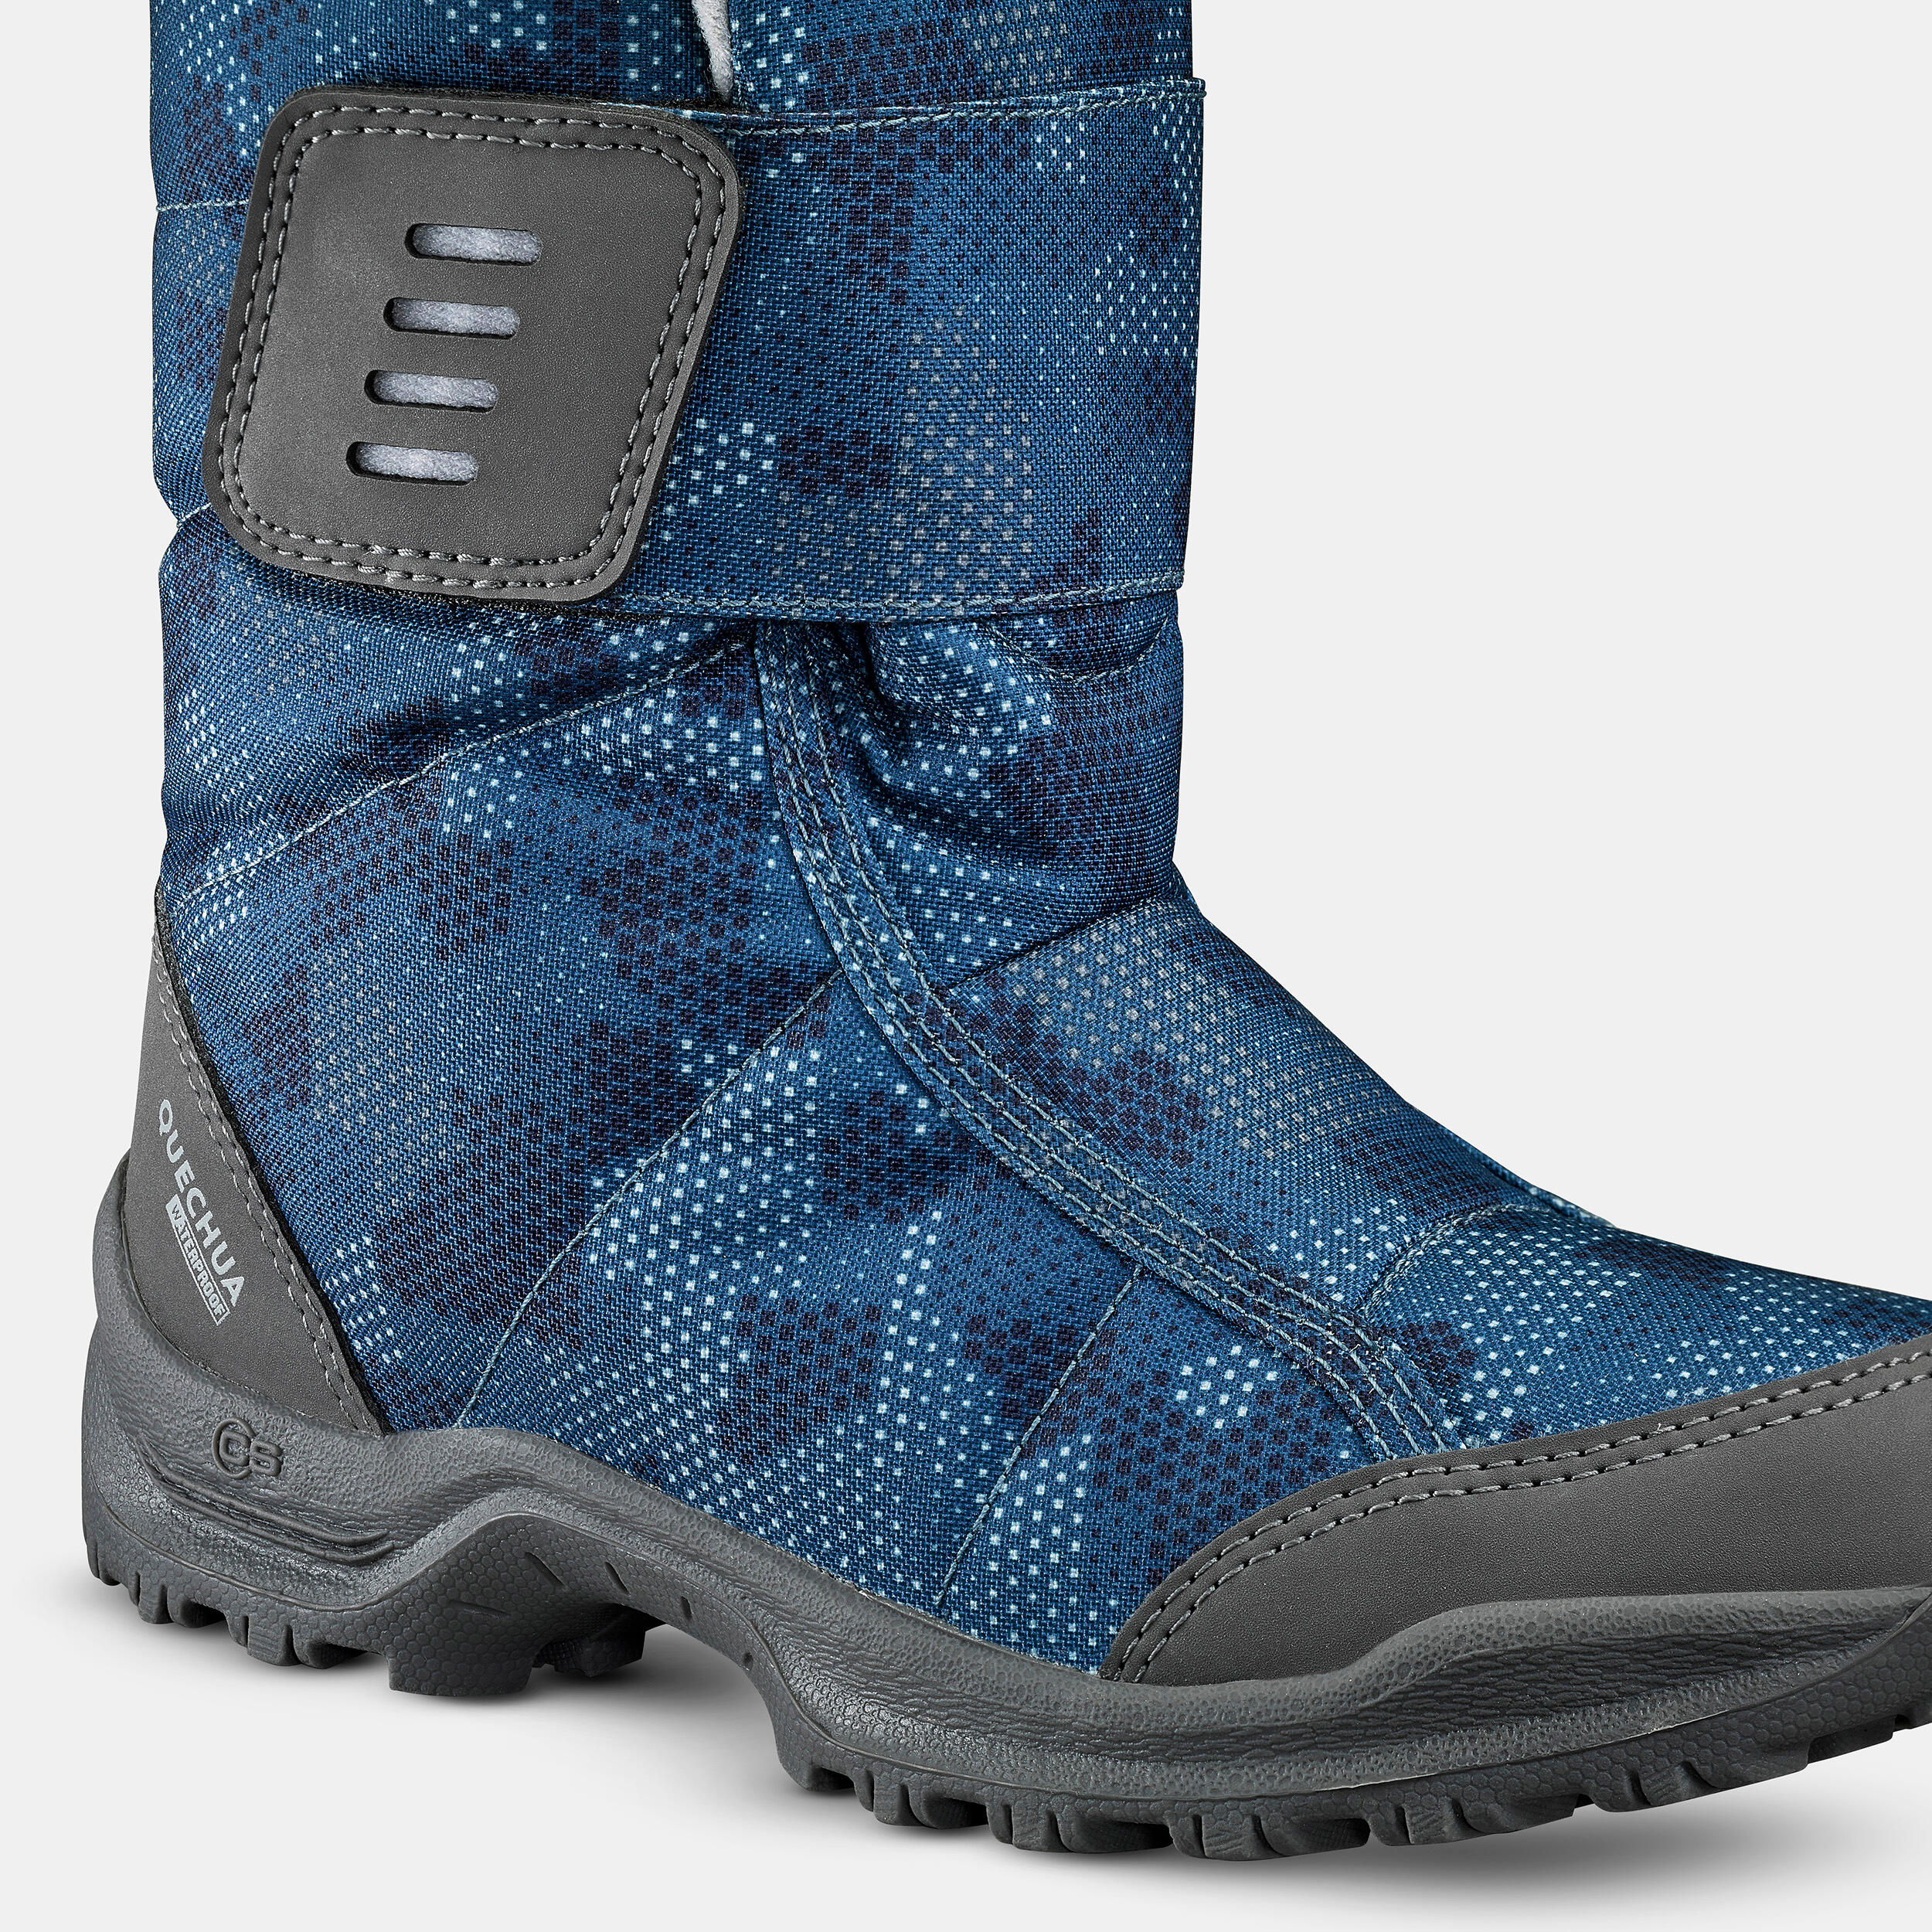 Kids’ Warm Waterproof Snow Hiking Boots SH100 X-Warm Size 7 - 5.5 5/7